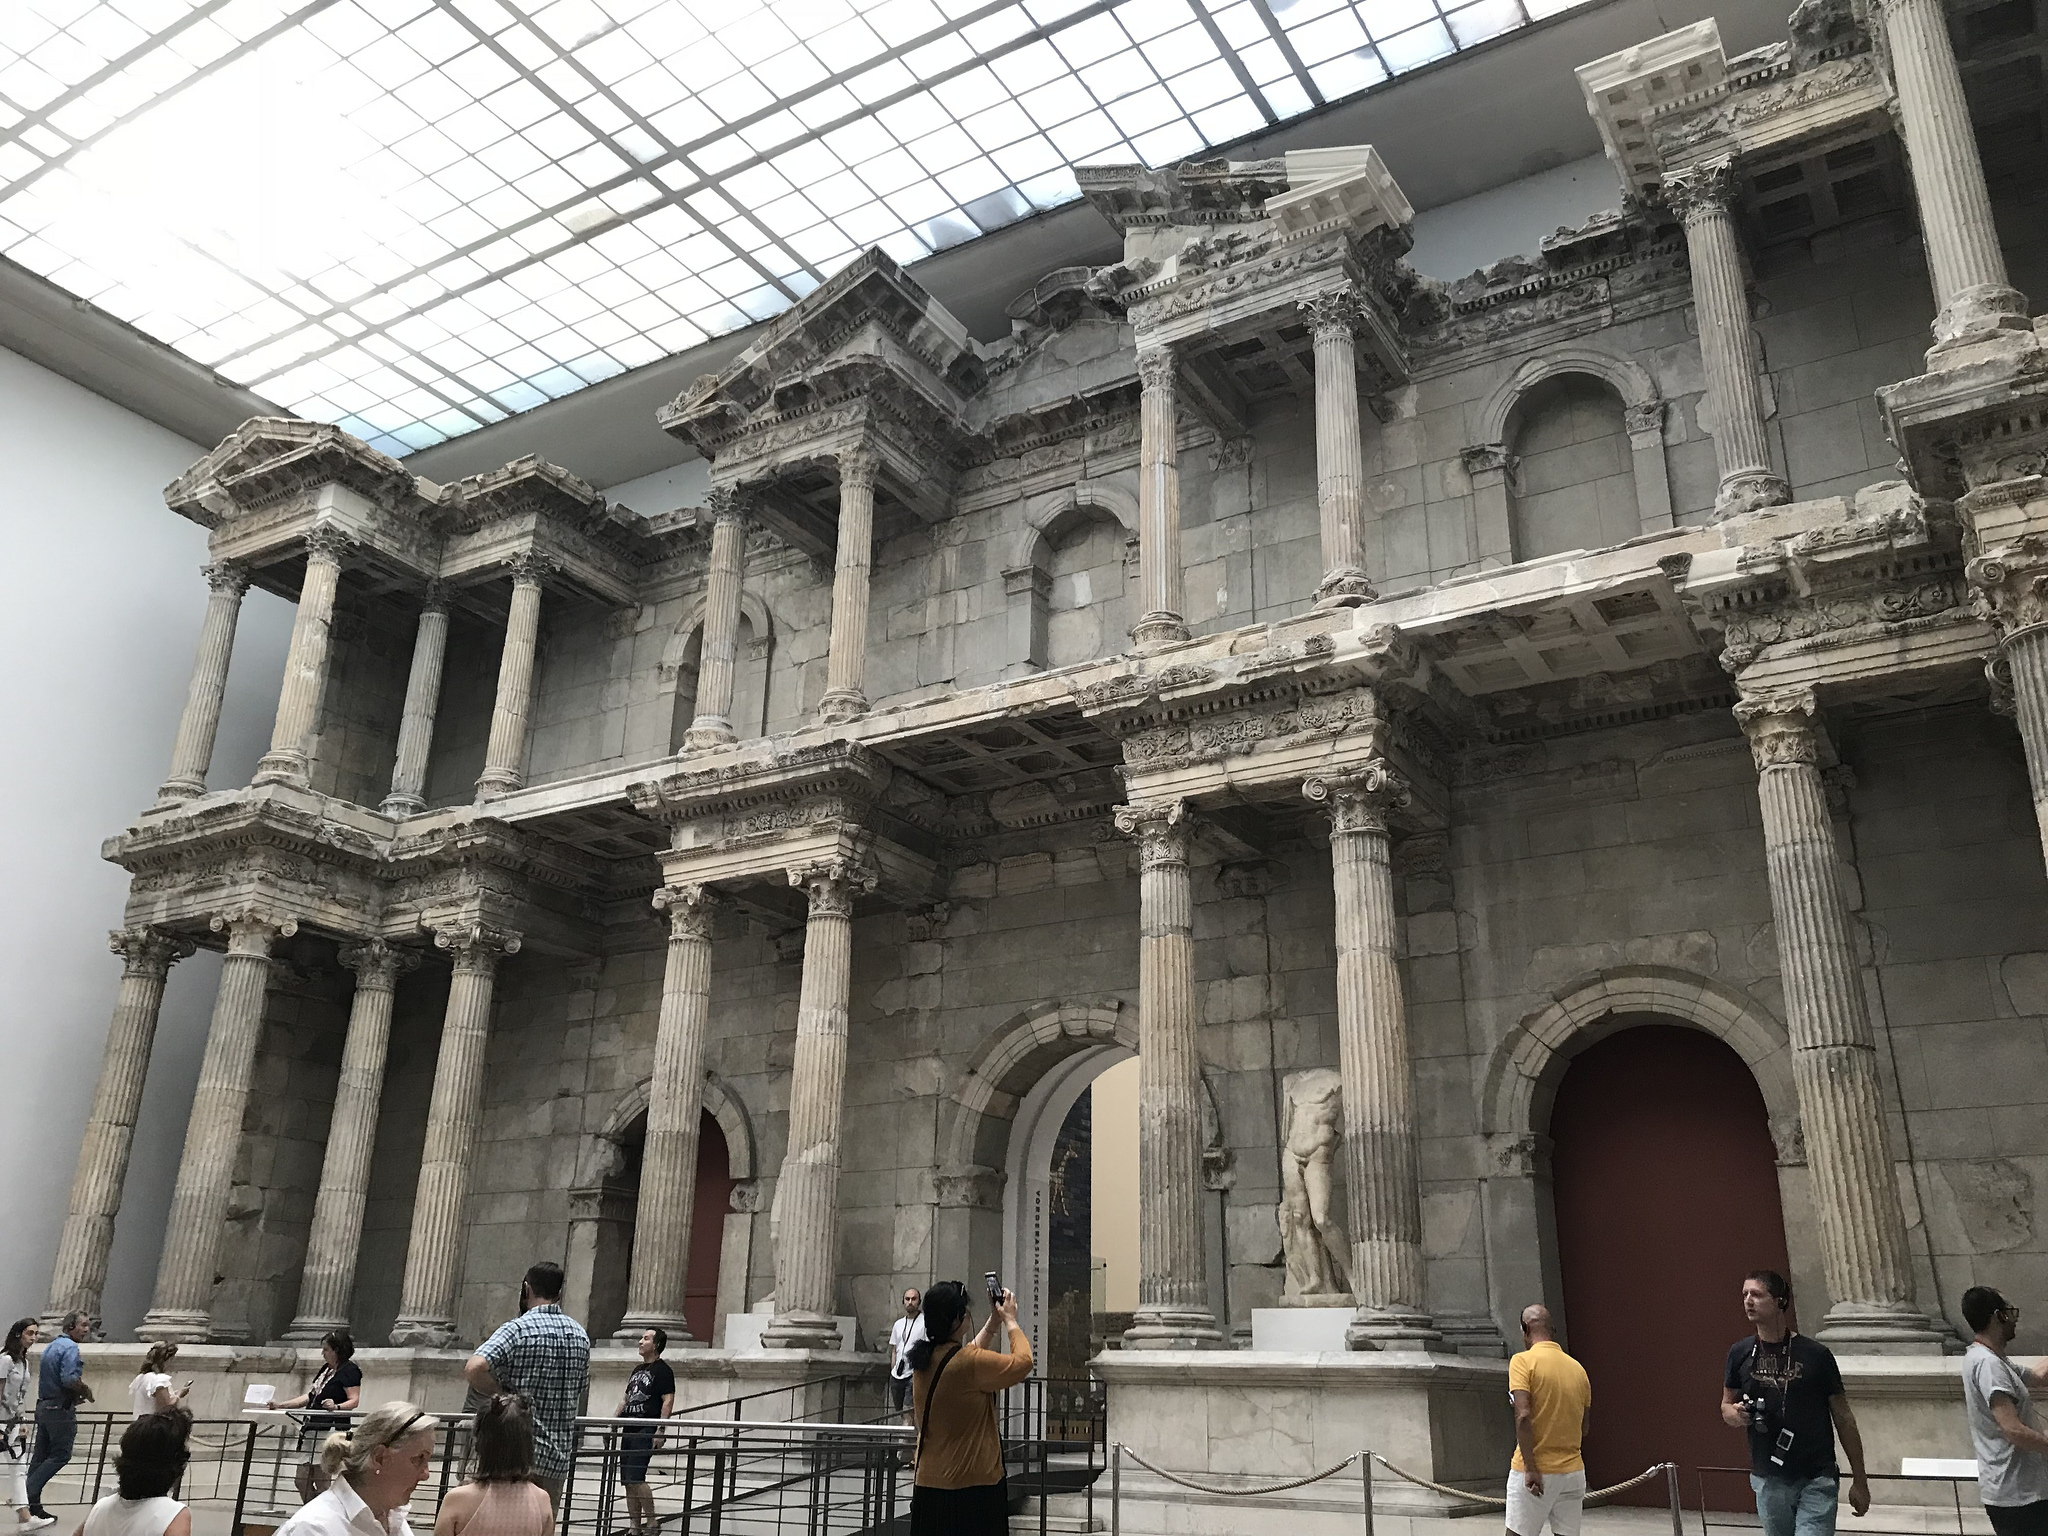 Miletus Gate, Pergamon Museum